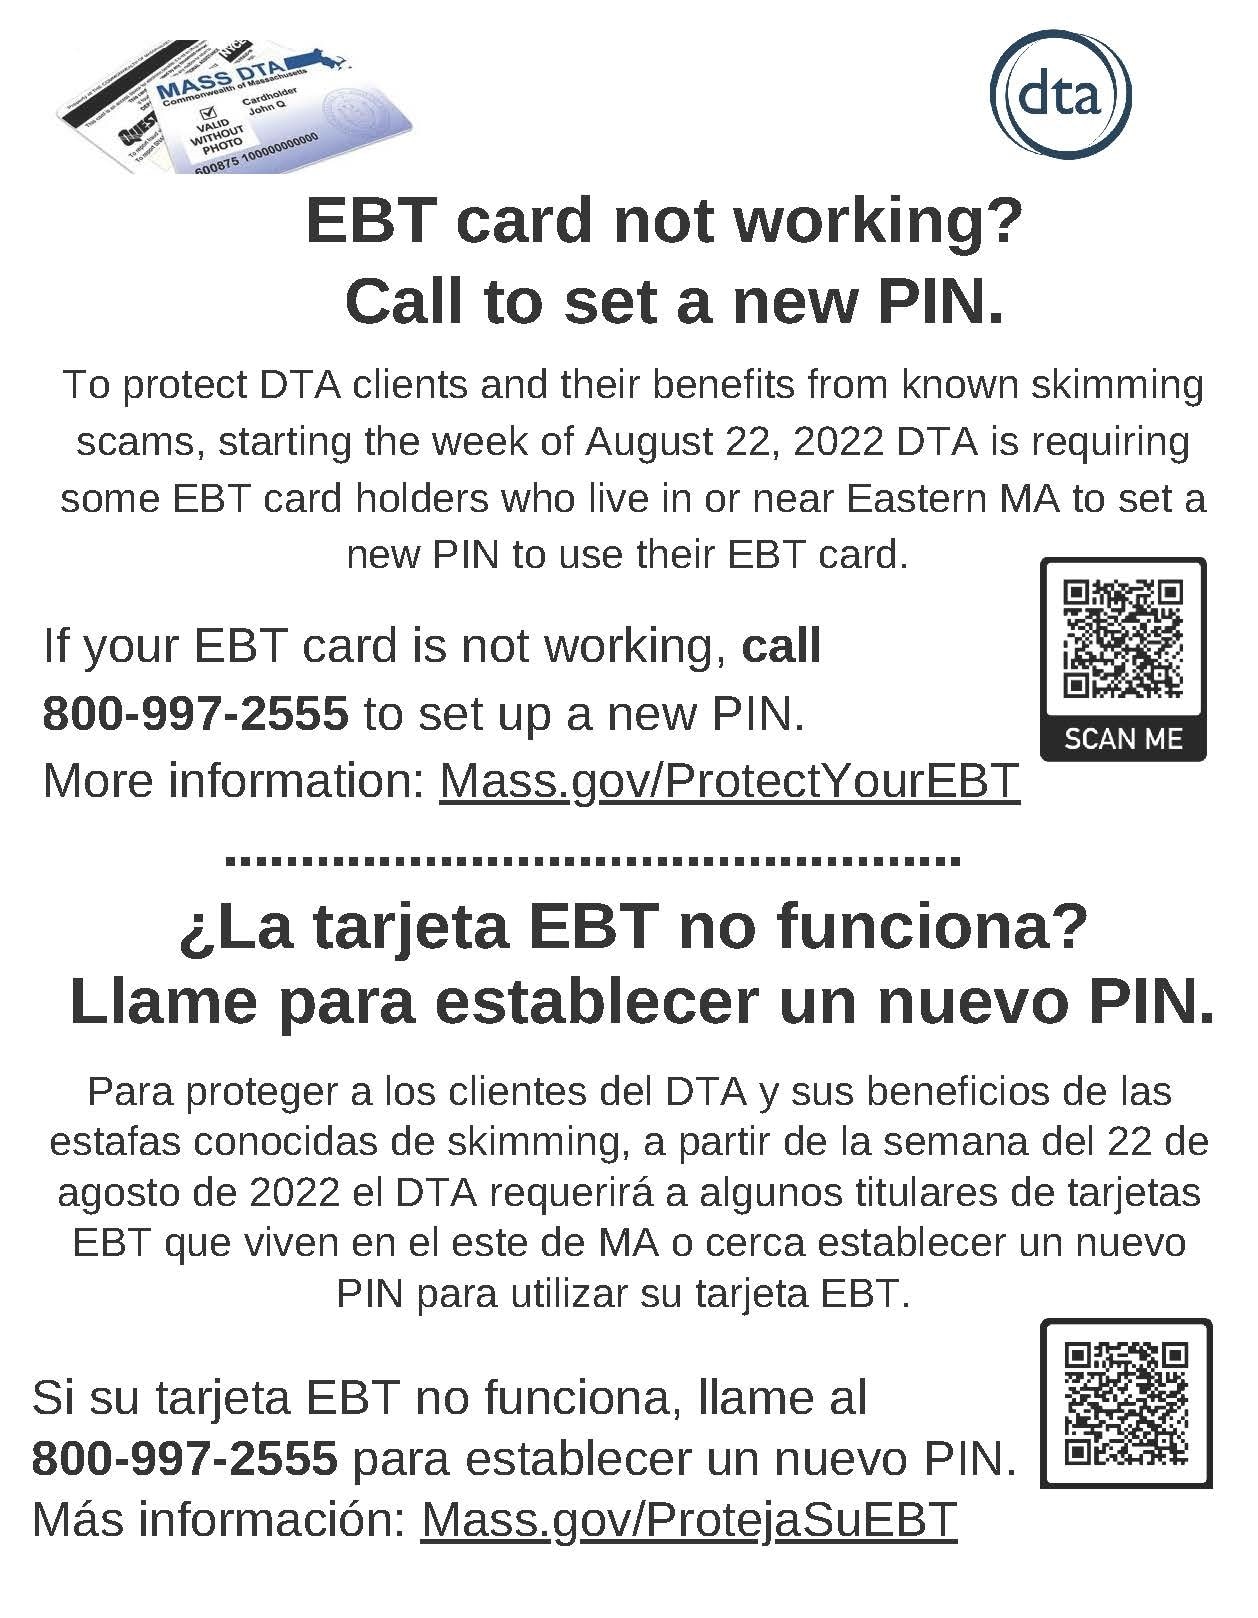 Retailer flyer - EBT card not working? Call to set a new PIN.